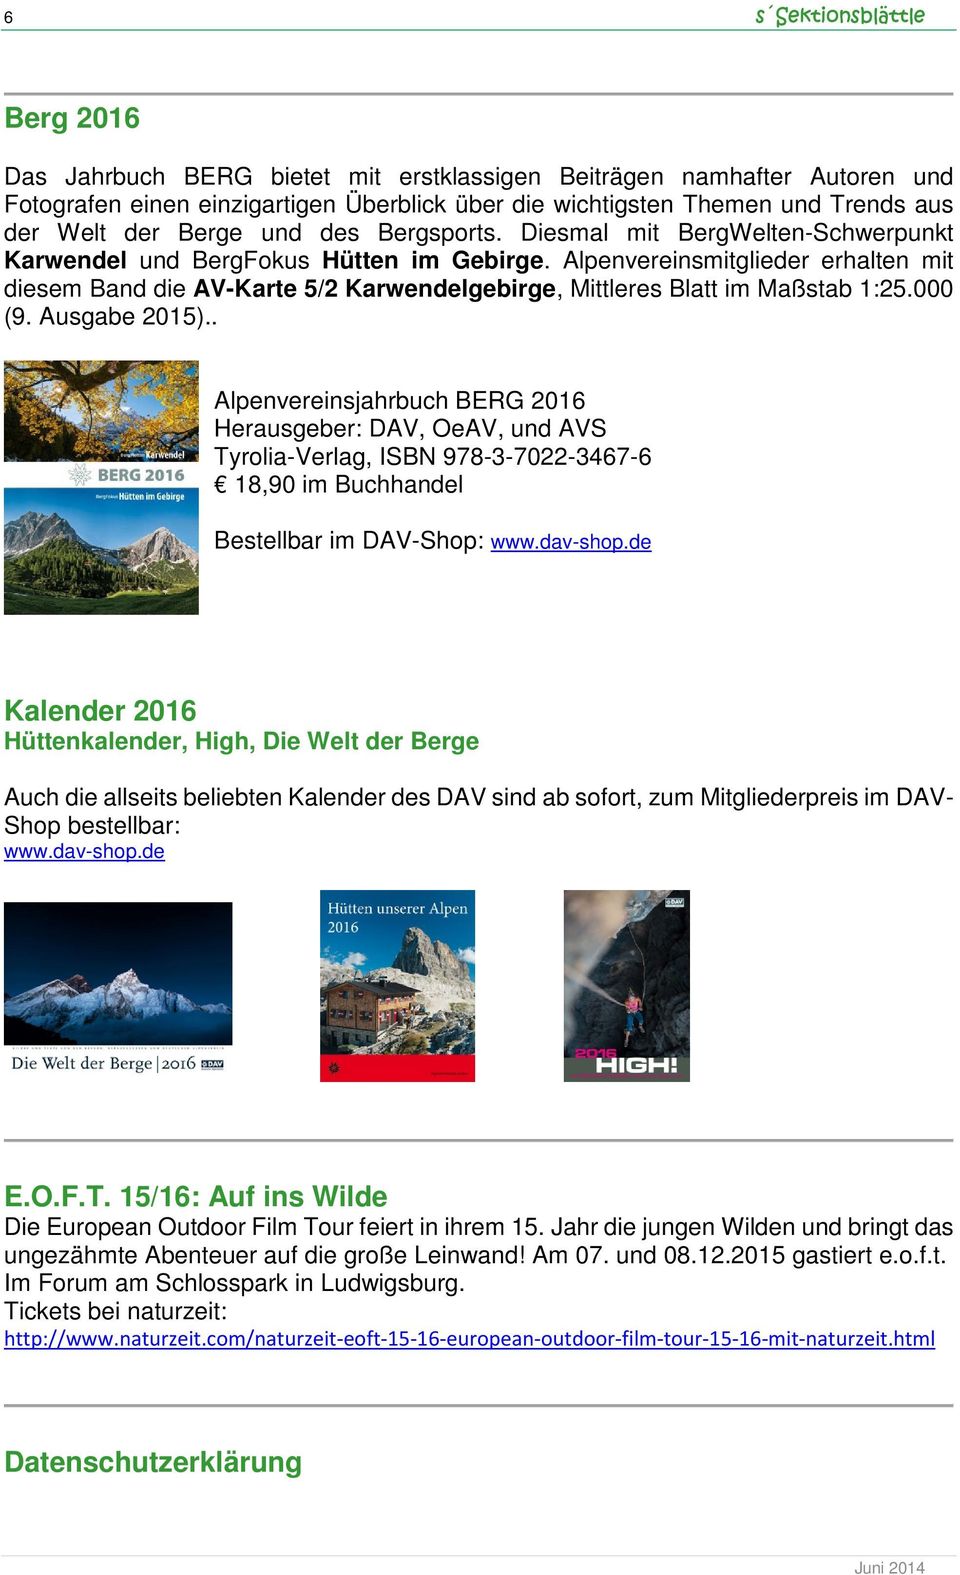 Alpenvereinsmitglieder erhalten mit diesem Band die AV-Karte 5/2 Karwendelgebirge, Mittleres Blatt im Maßstab 1:25.000 (9. Ausgabe 2015).